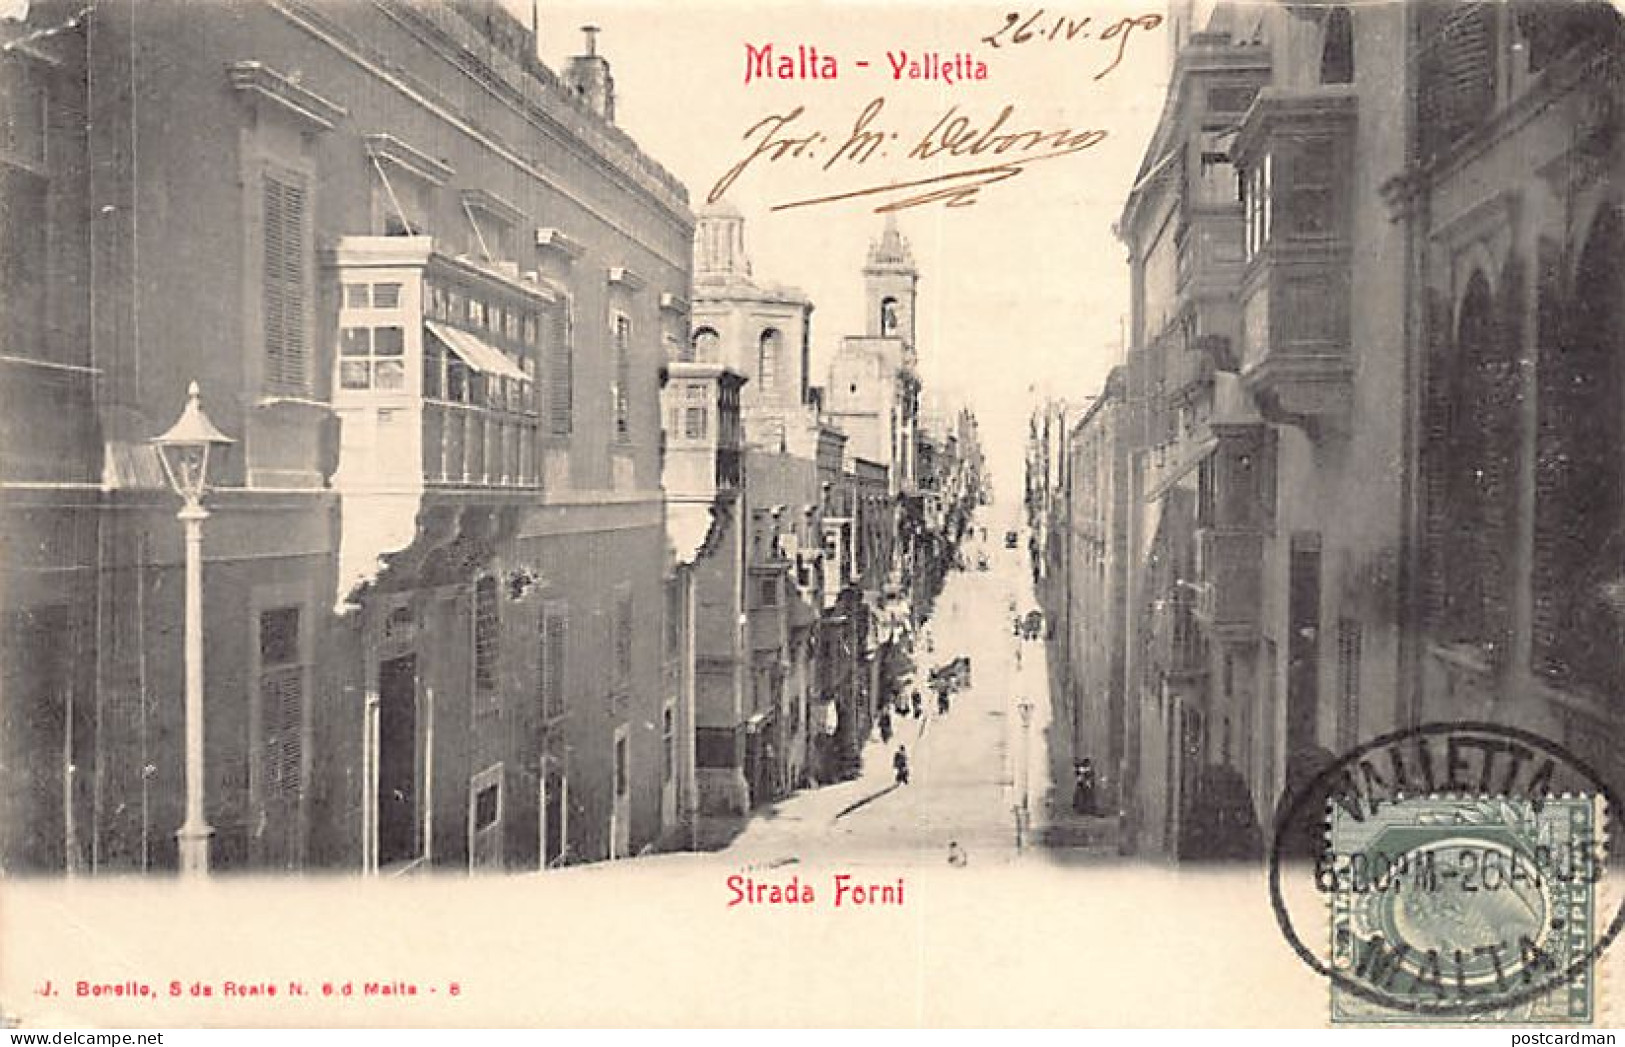 Malta - VALETTA - Strada Forni - Publ. J. Bonello 8 - Malta